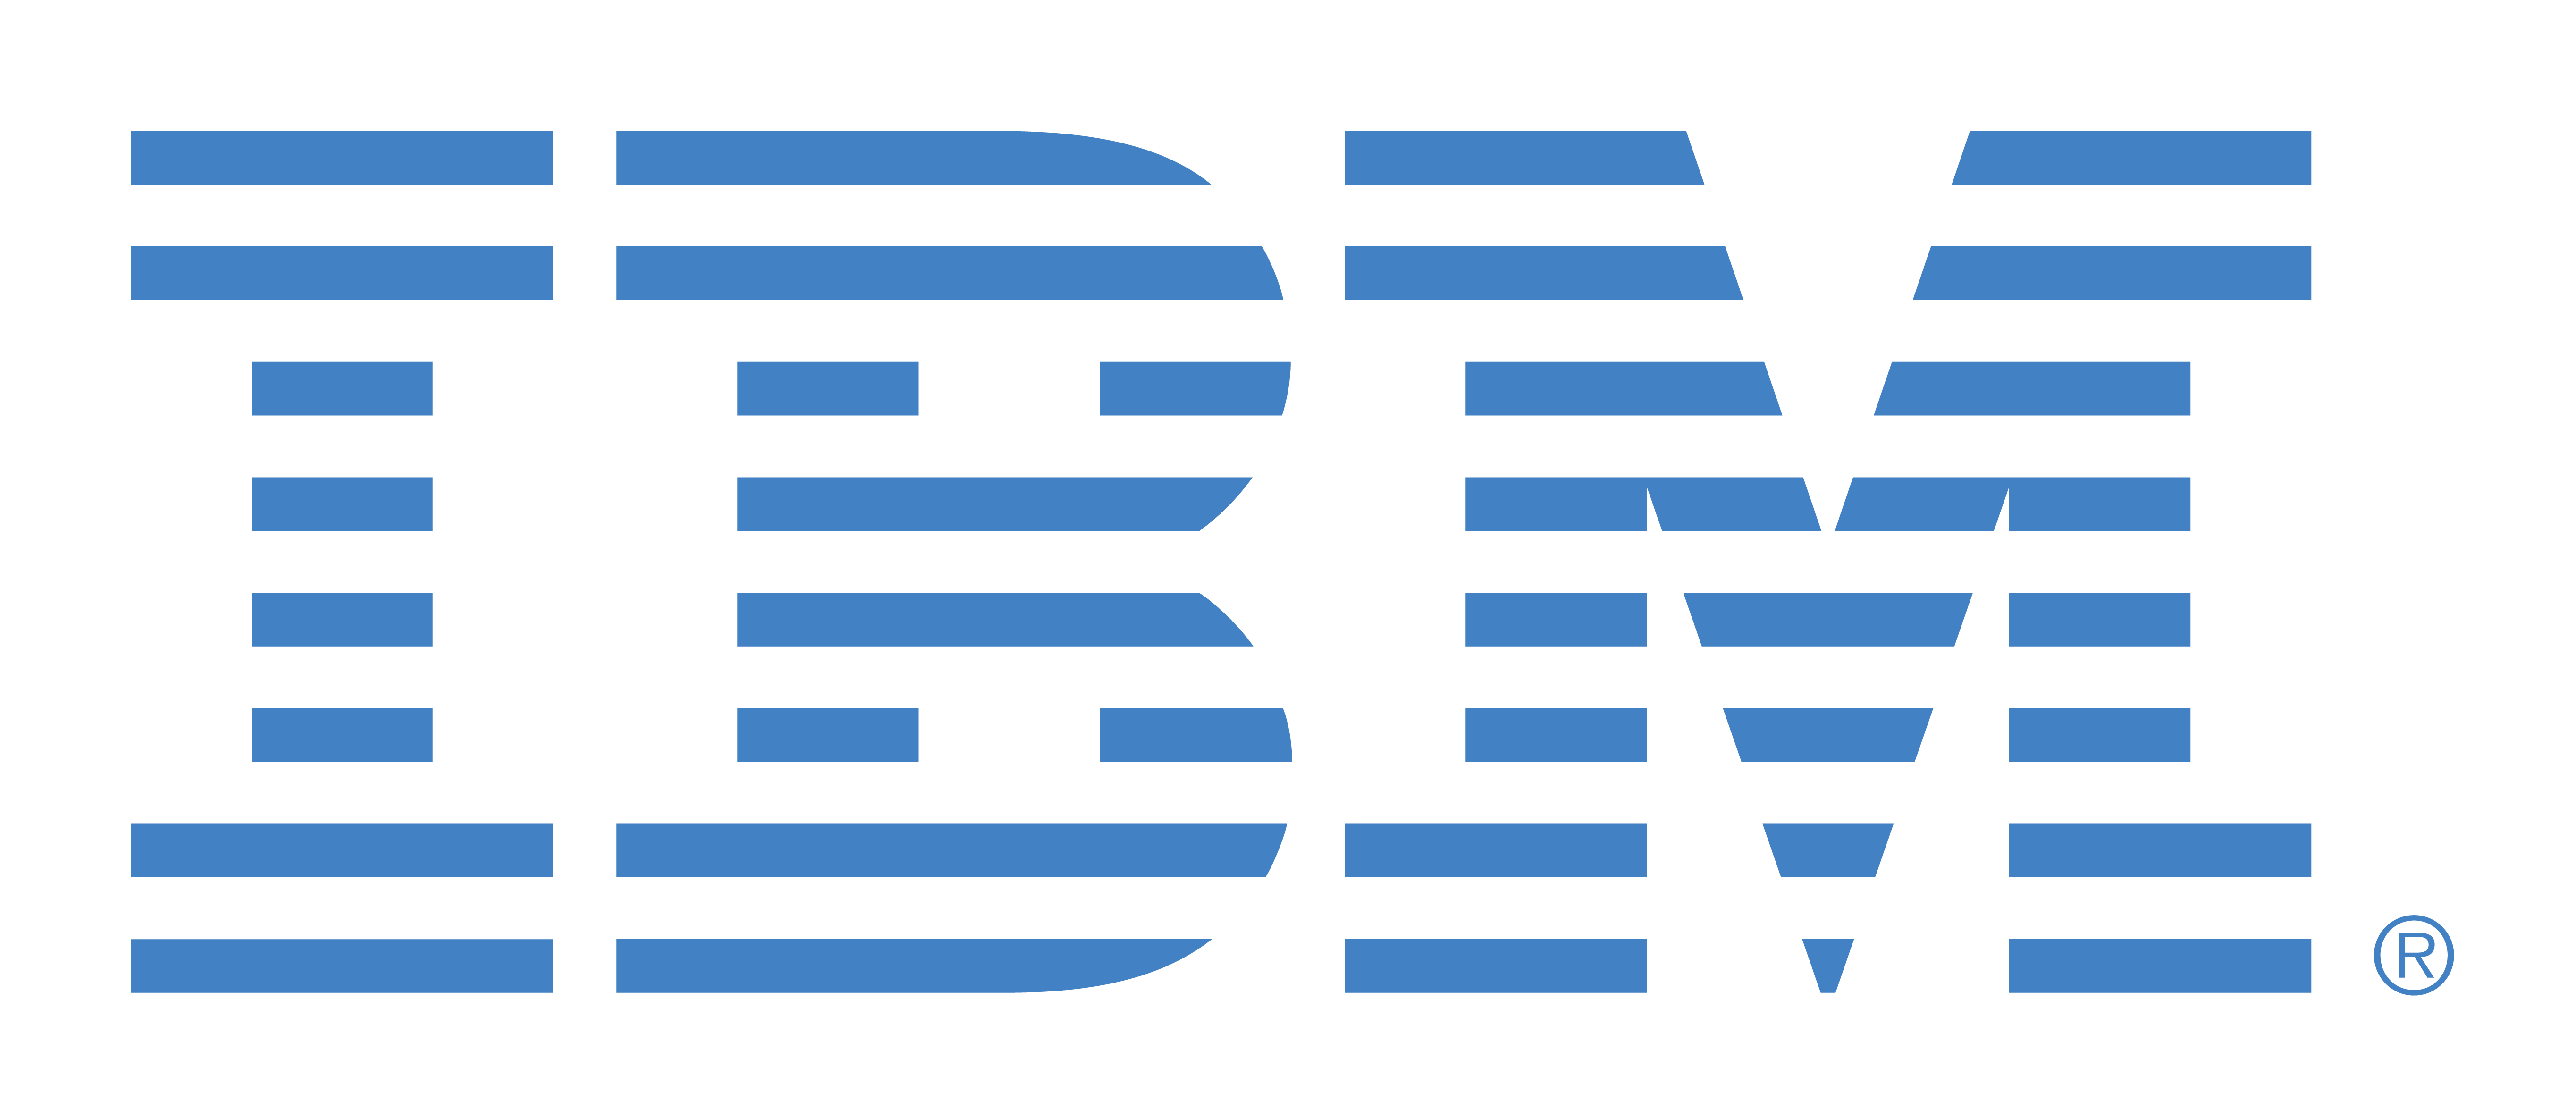 Official IBM Logo - IBM logos PNG image free download, IBM logo PNG